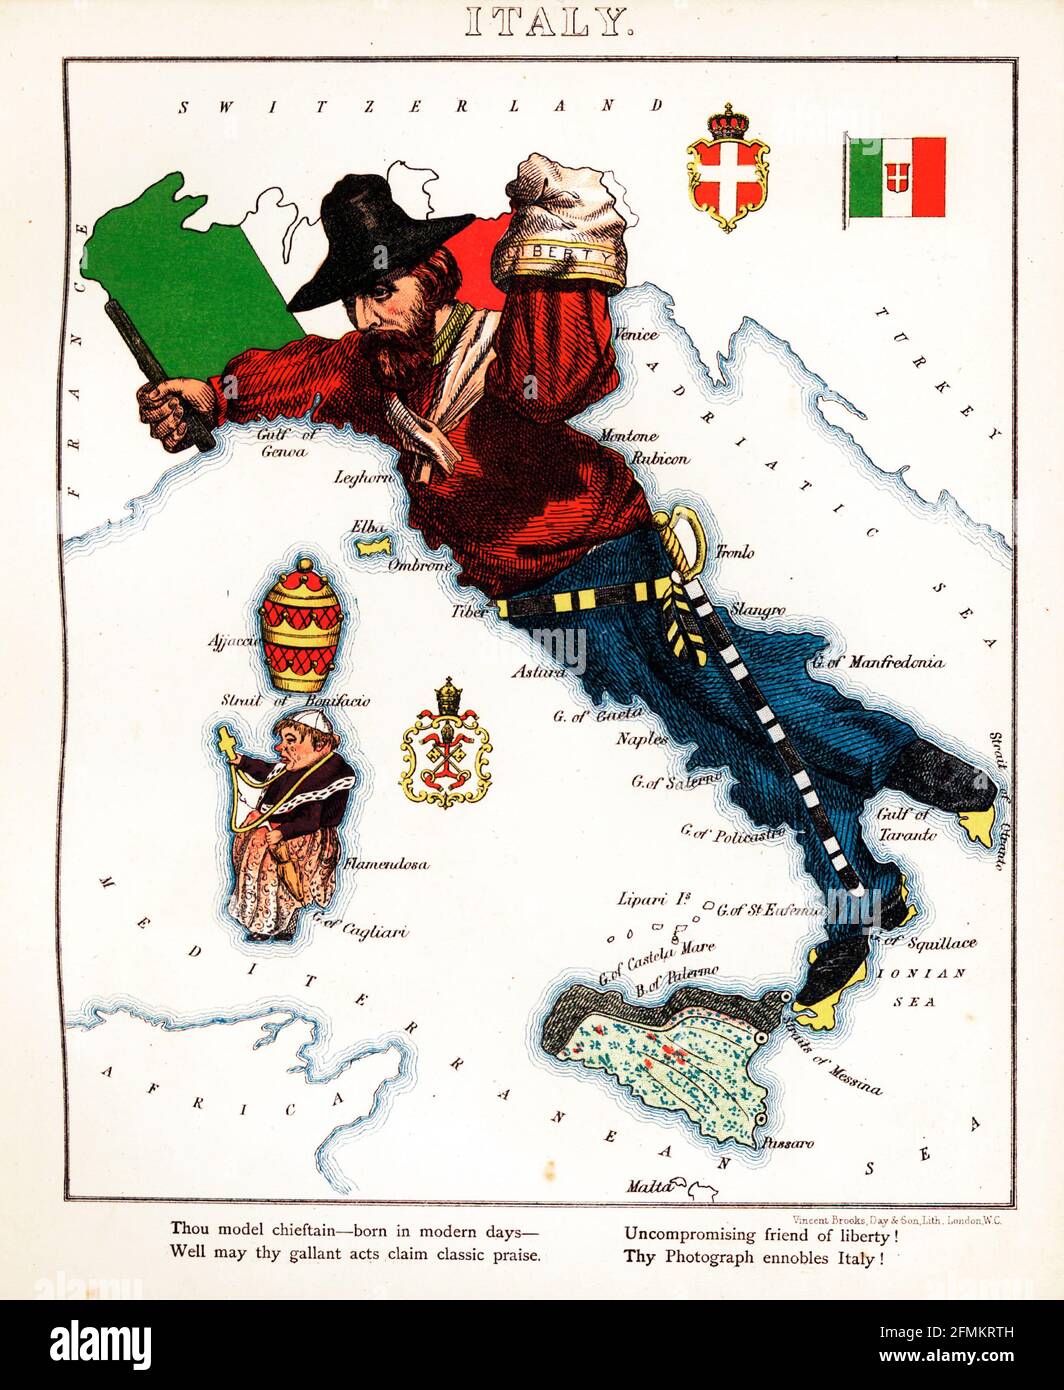 Italia – Diversión geográfica. Mapa satírico / cartográfico ilustrado. Publicado en Londres por la firma de Hodder y Stoughton en 1869. Foto de stock